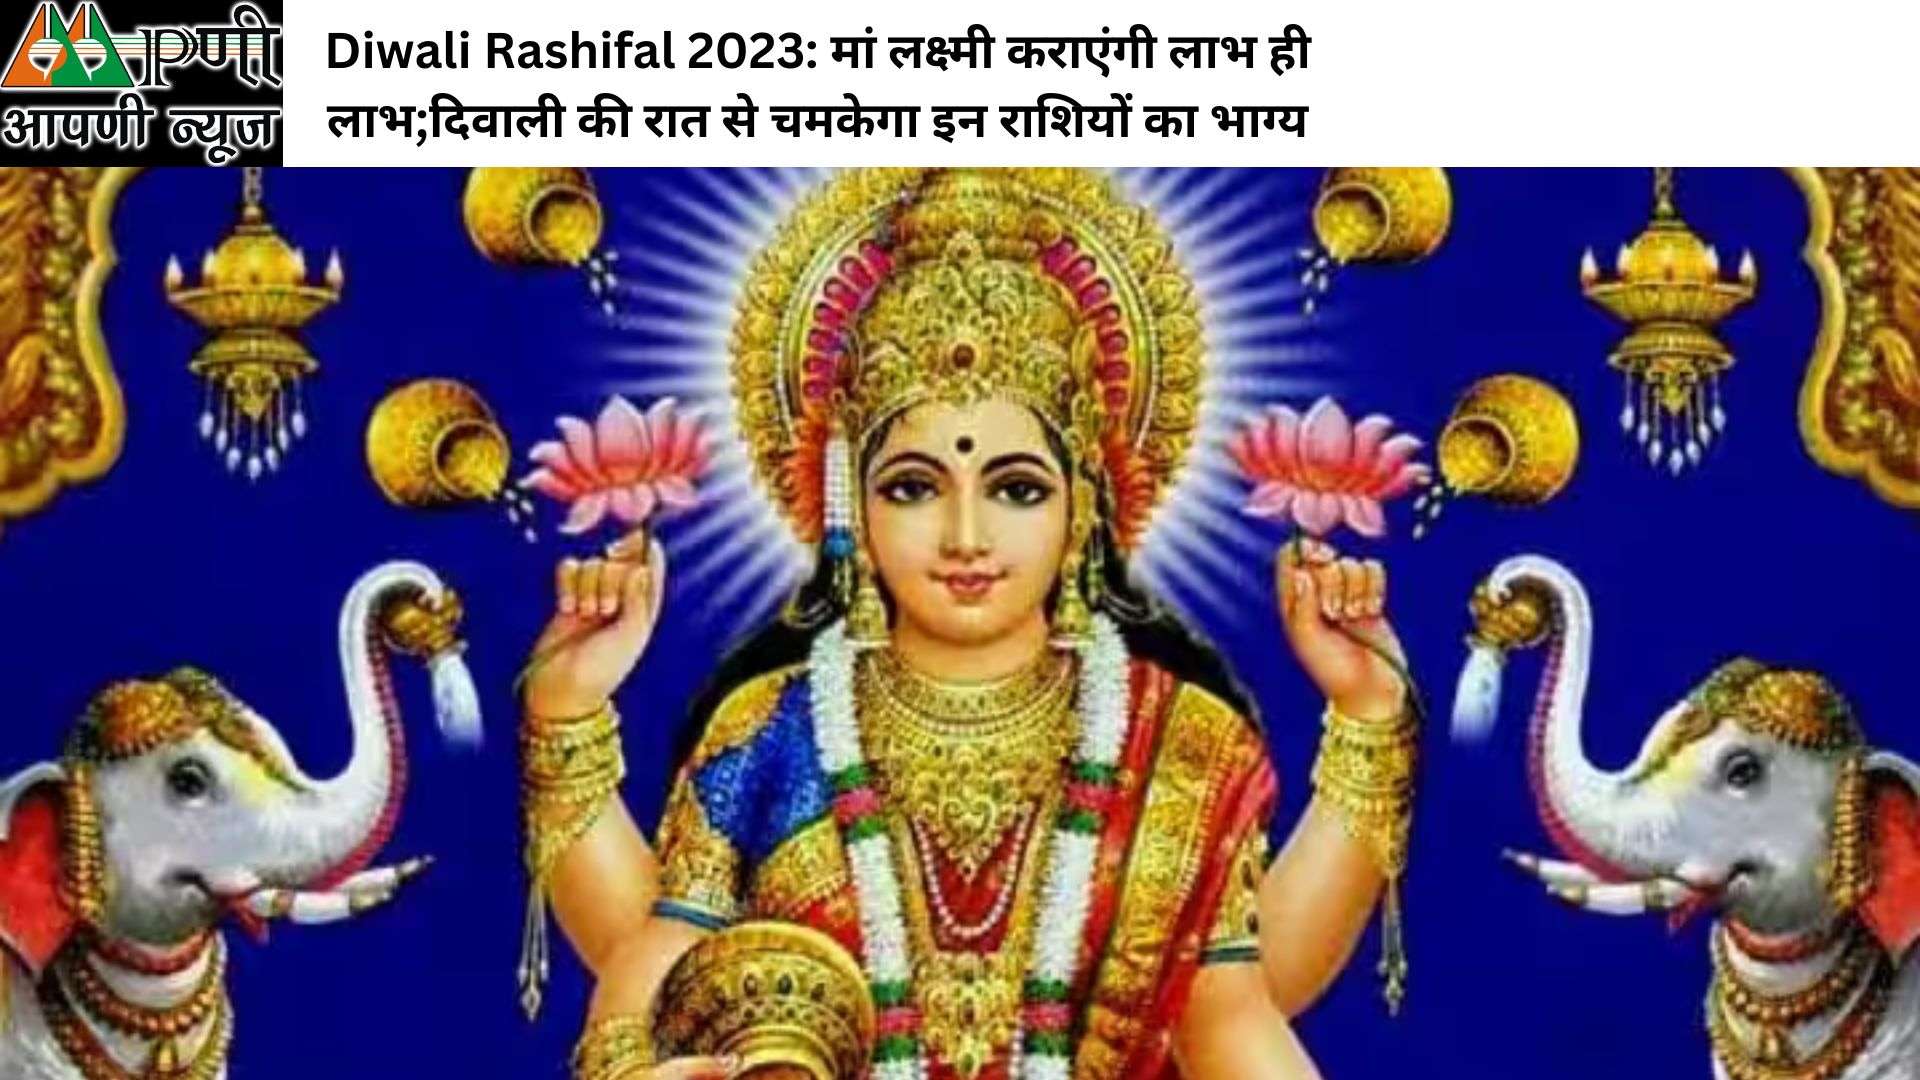 Diwali Rashifal 2023: मां लक्ष्मी कराएंगी लाभ ही लाभ;दिवाली की रात से चमकेगा इन राशियों का भाग्य